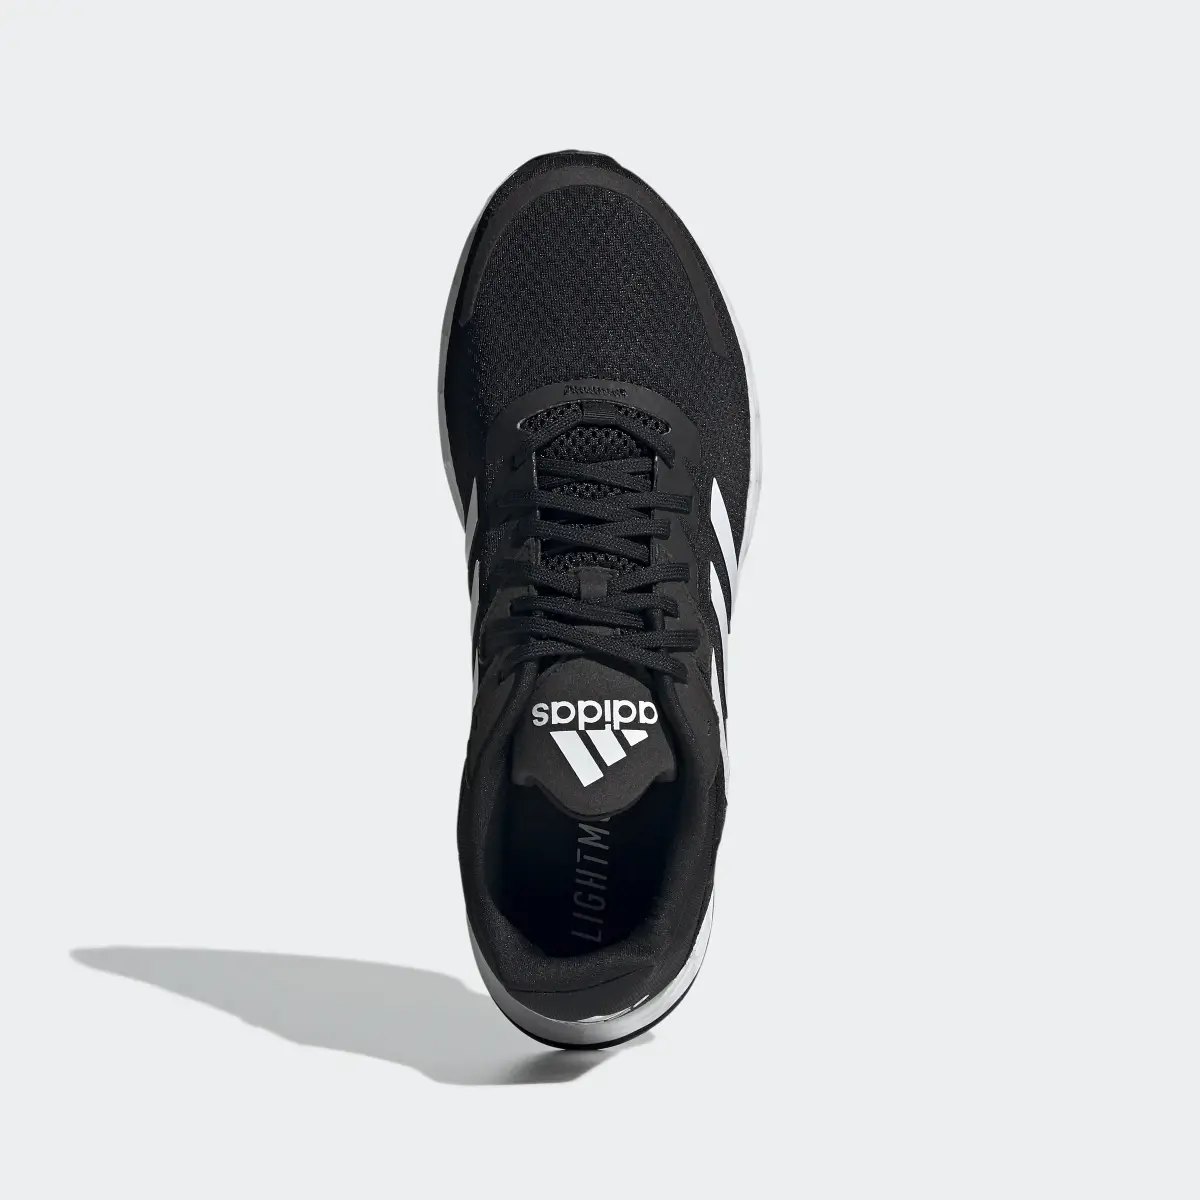 Adidas Duramo SL Running Shoes. 3